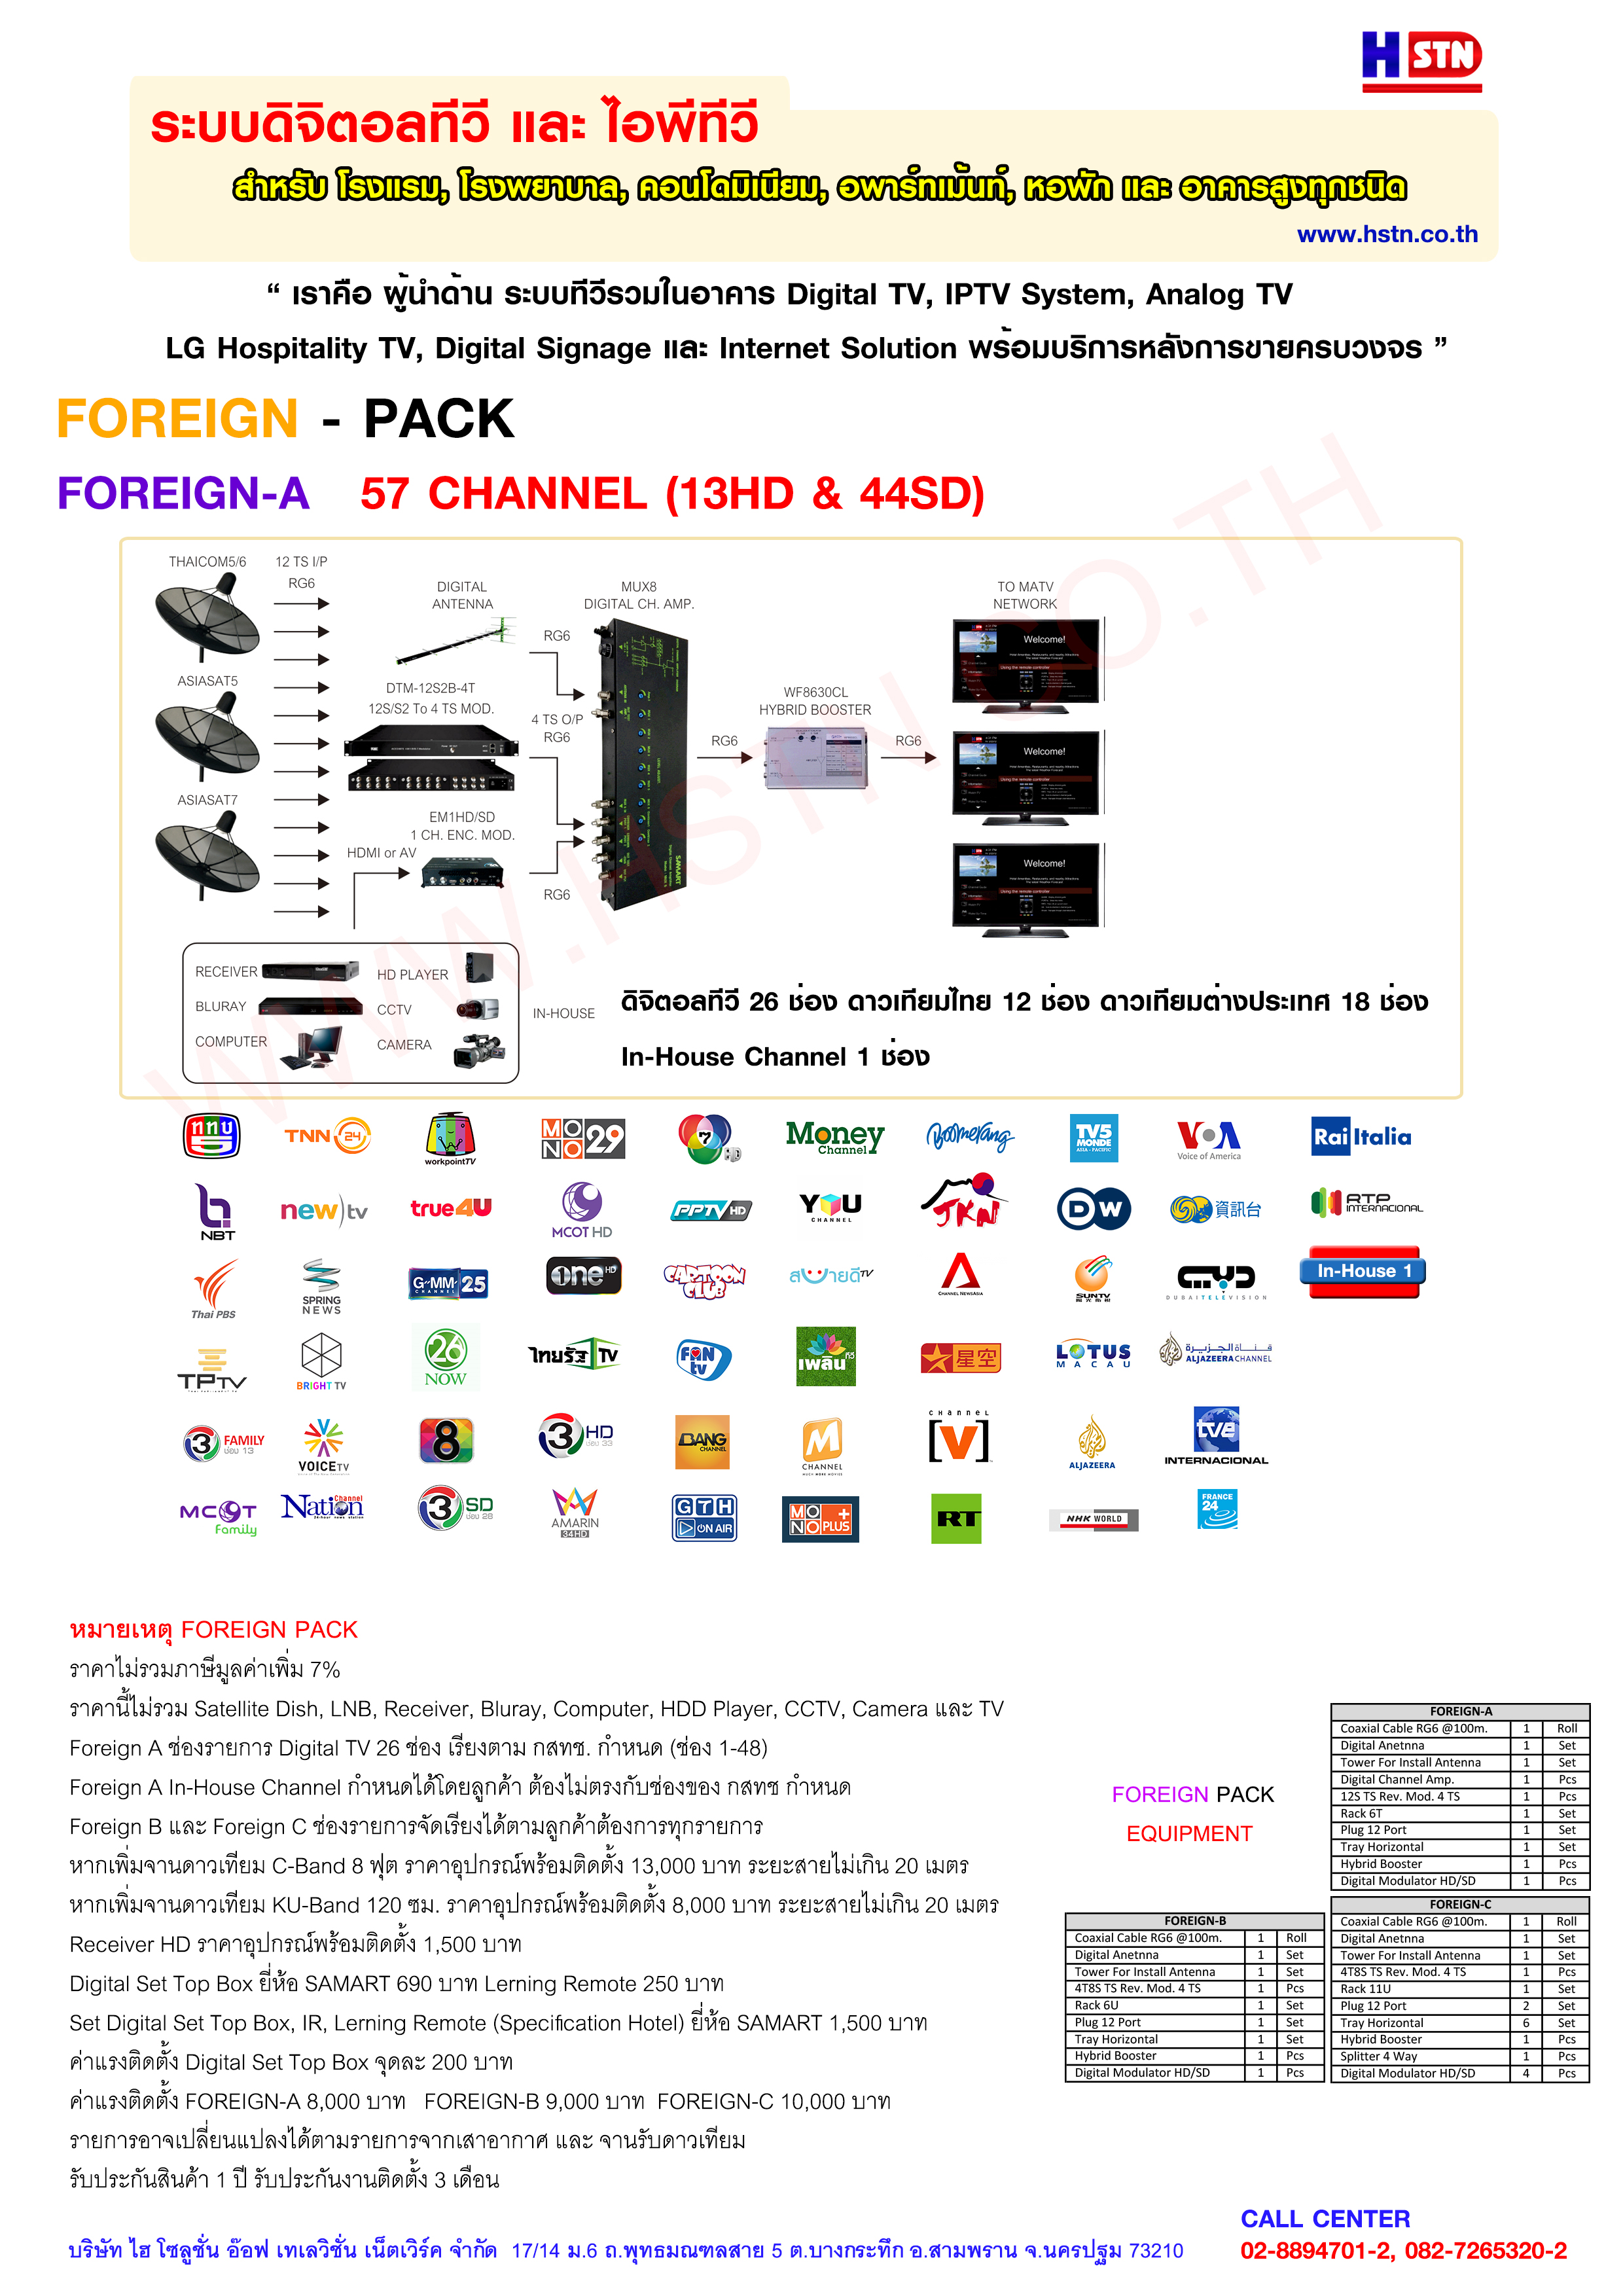 Digital TV Solution FOREIGN Pack โดย HSTN